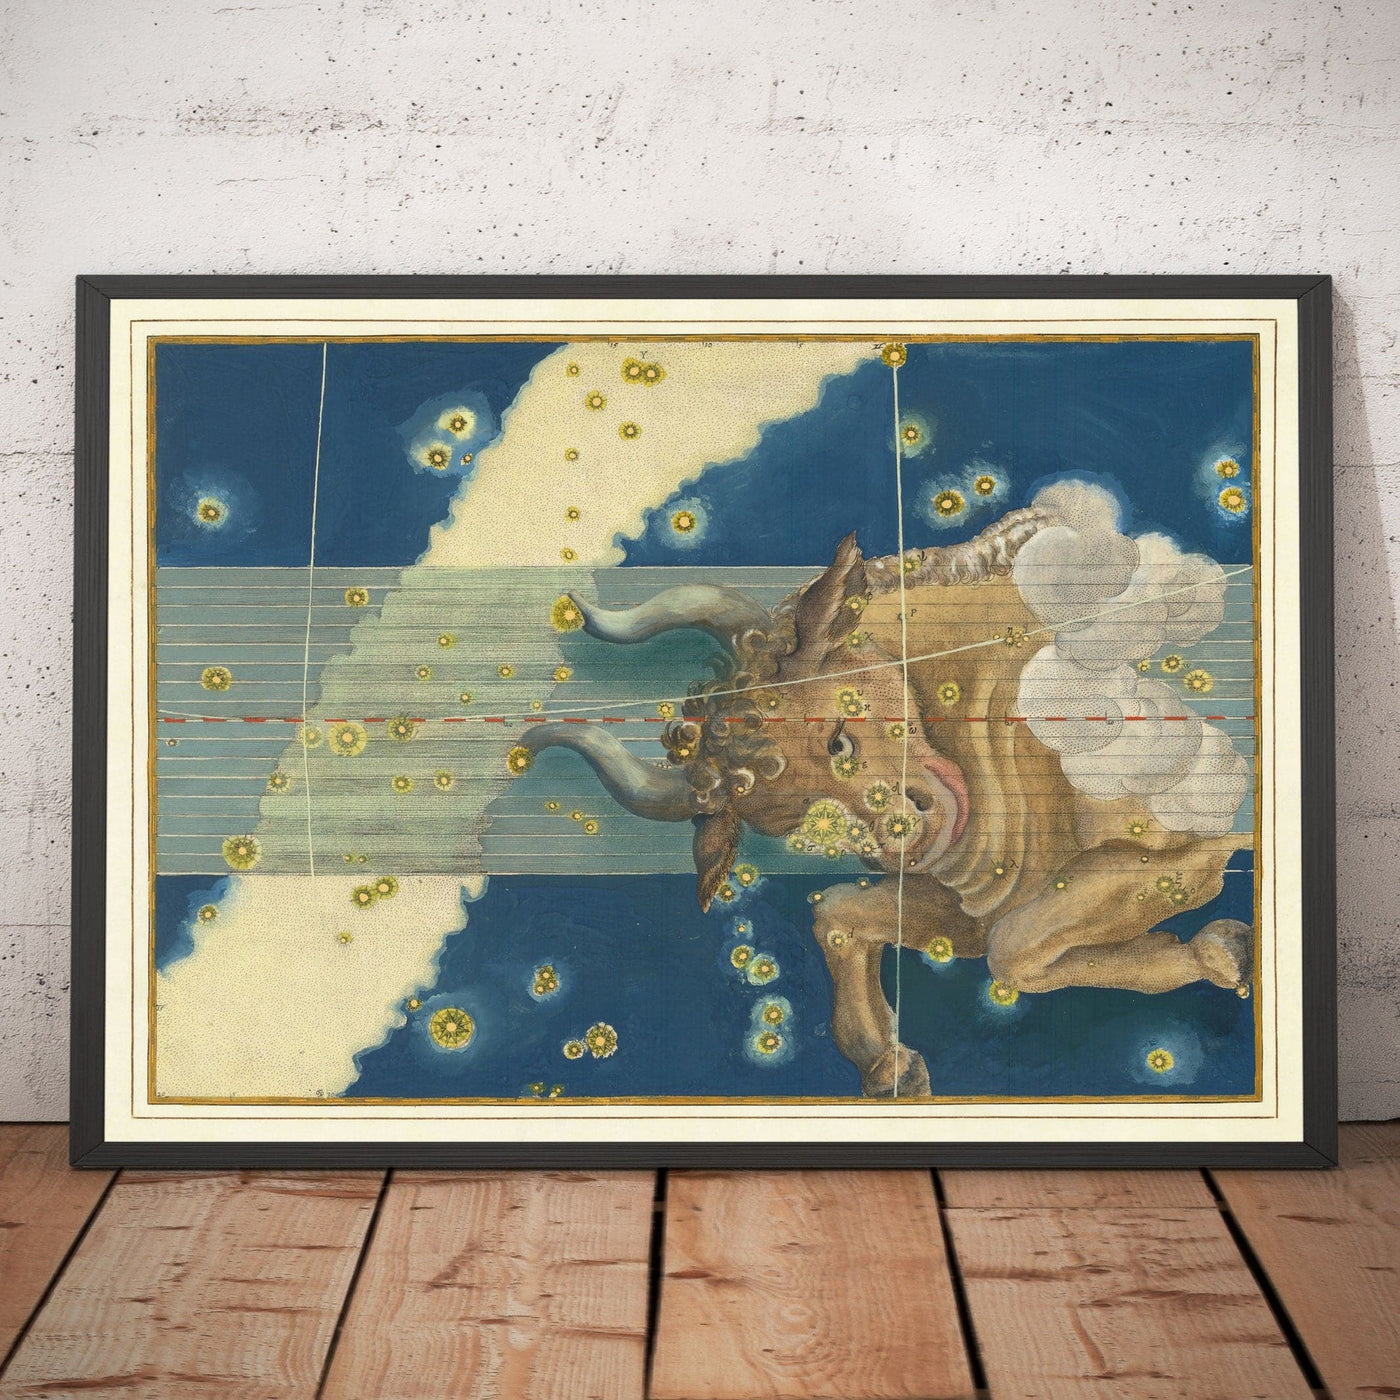 Antiguo mapa estelar de Tauro, 1603 por Johann Bayer - Carta astrológica del zodiaco - El signo del horóscopo del toro